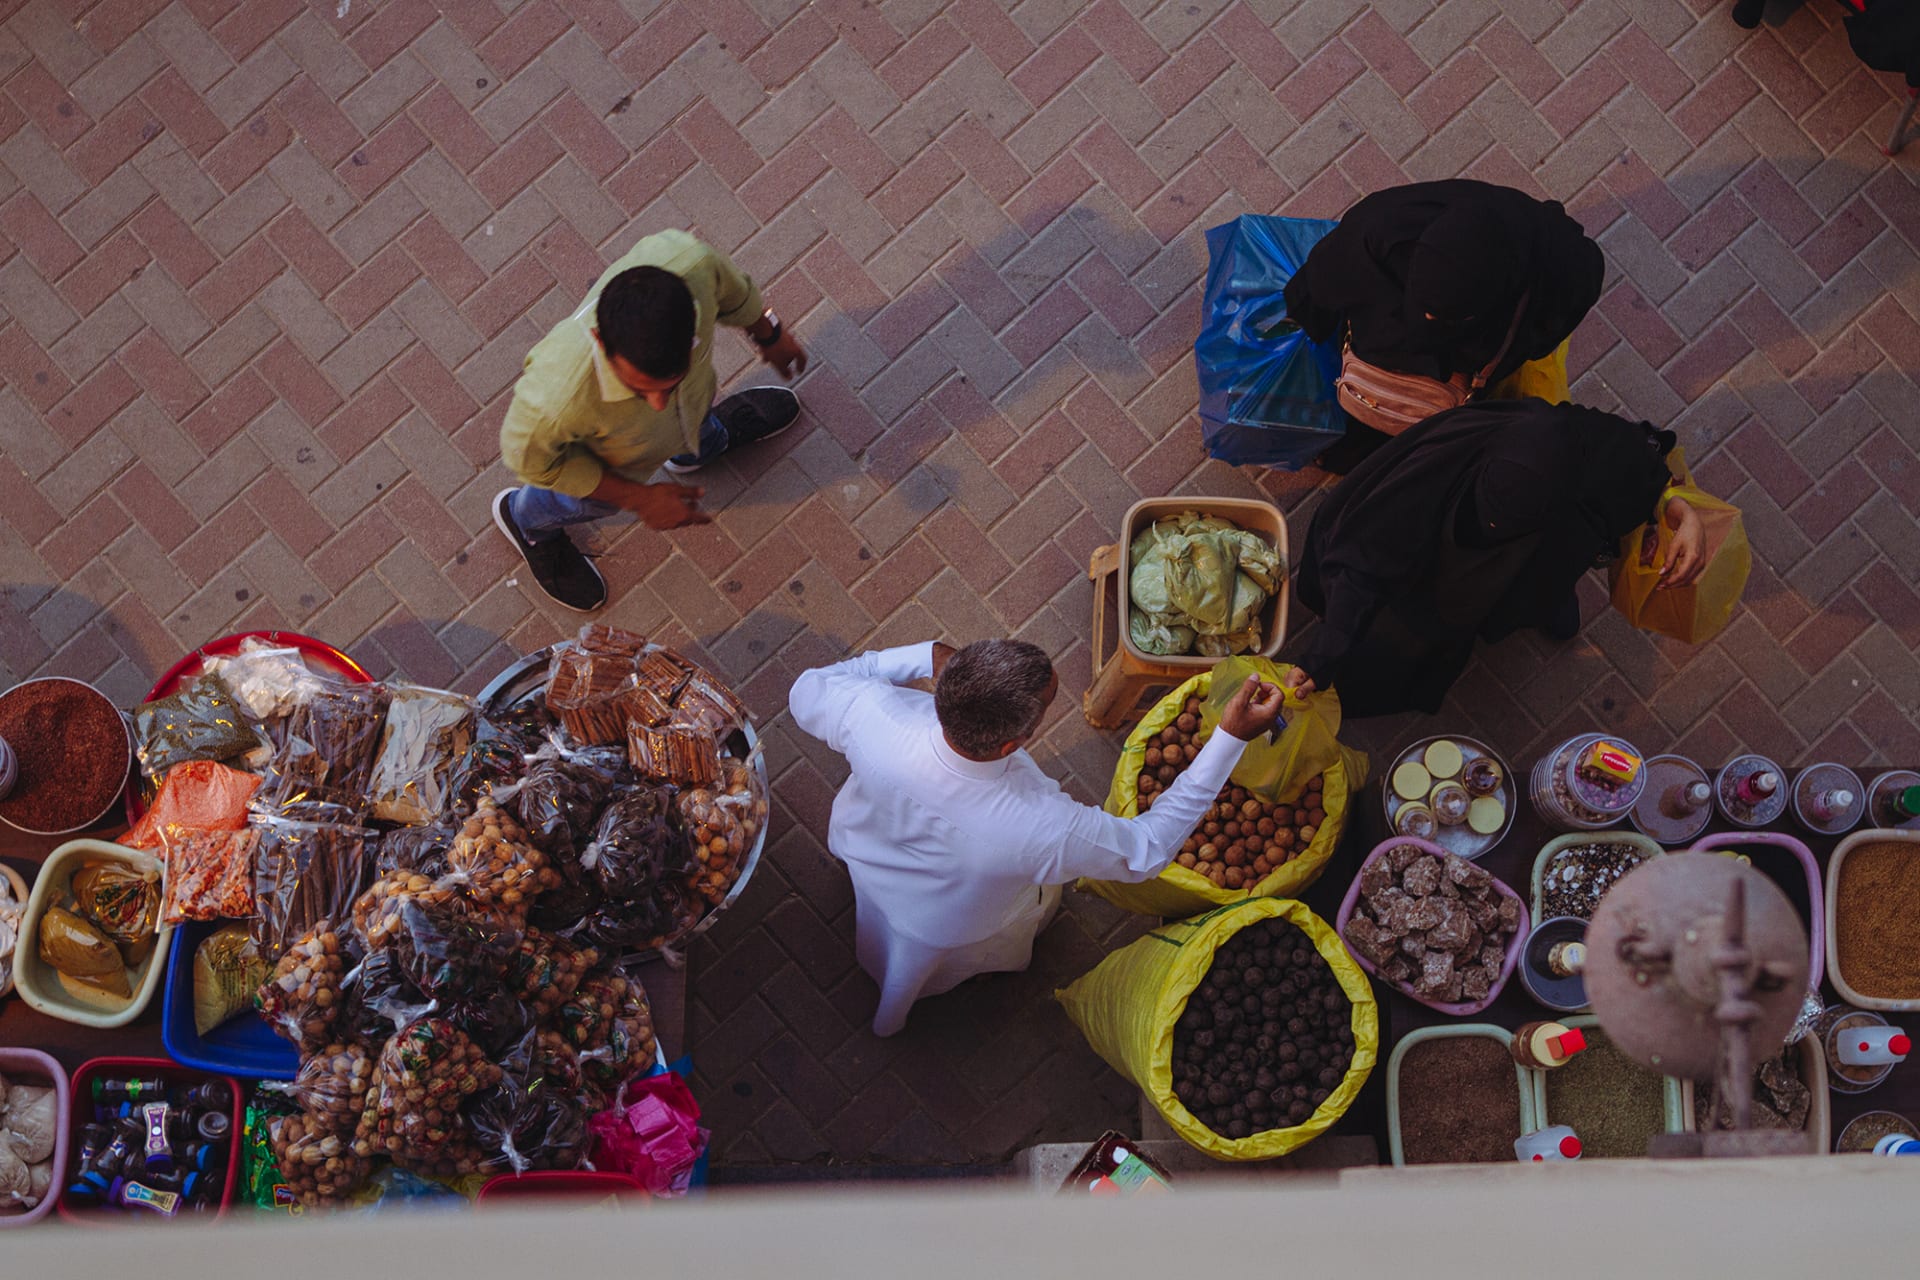 بالسعودية.. مصور يوثق أجواء رمضان بأحد أقدم أسواق الجزيرة العربية